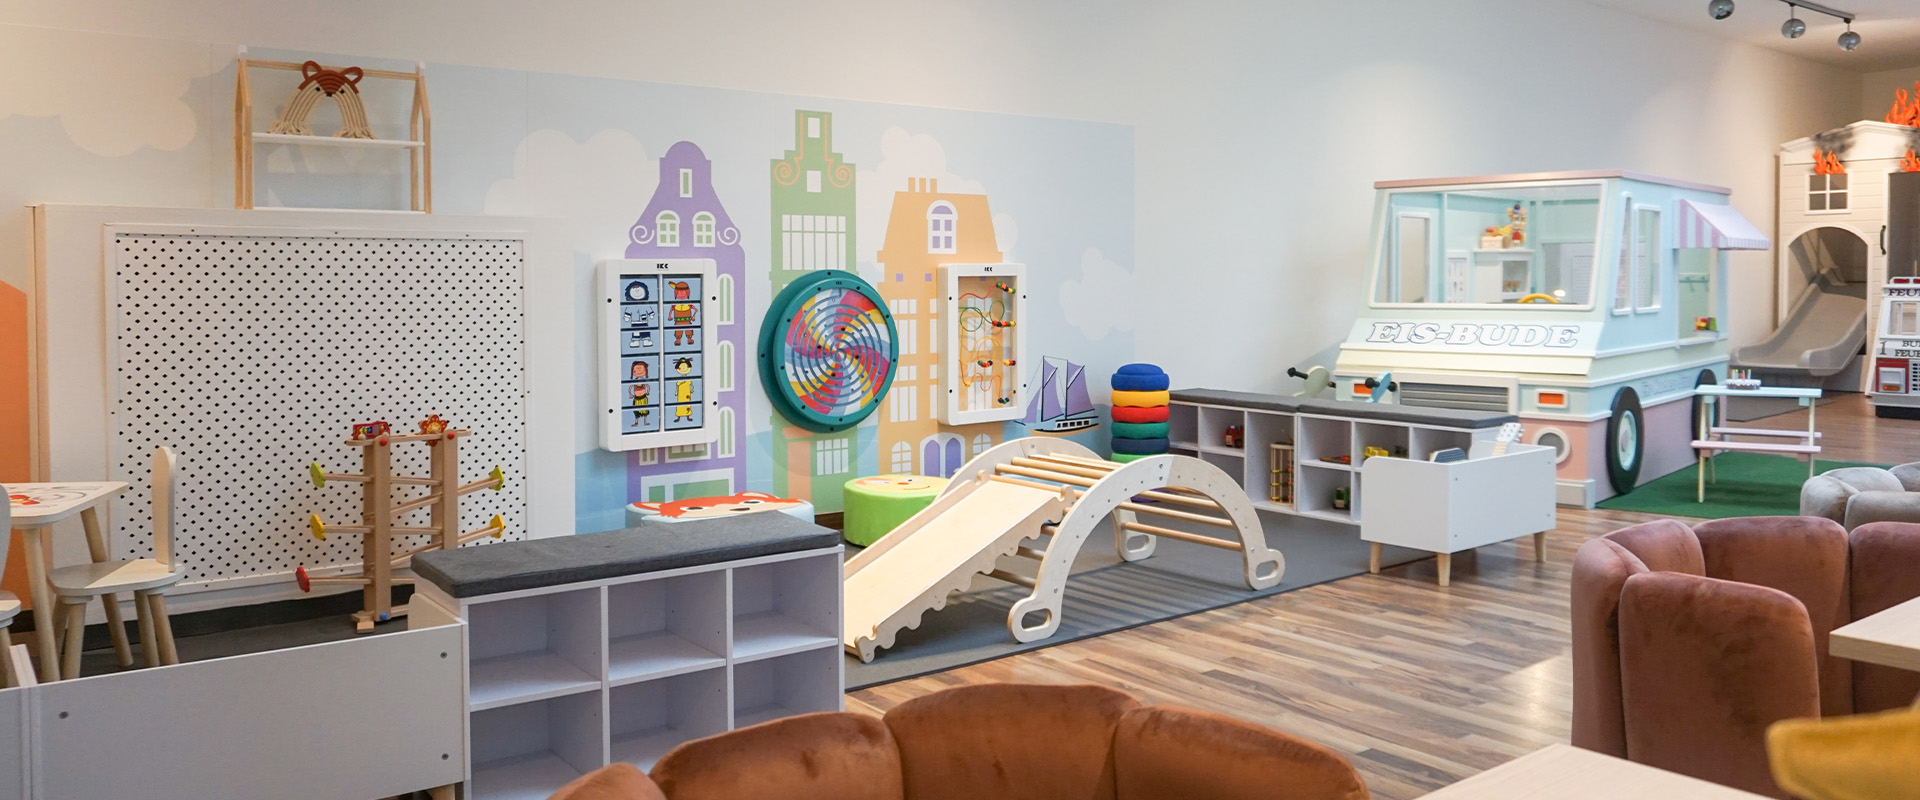 IKC speelhoek voor kinderen in kindercafe Bude Eins in Pempelfort Duitsland